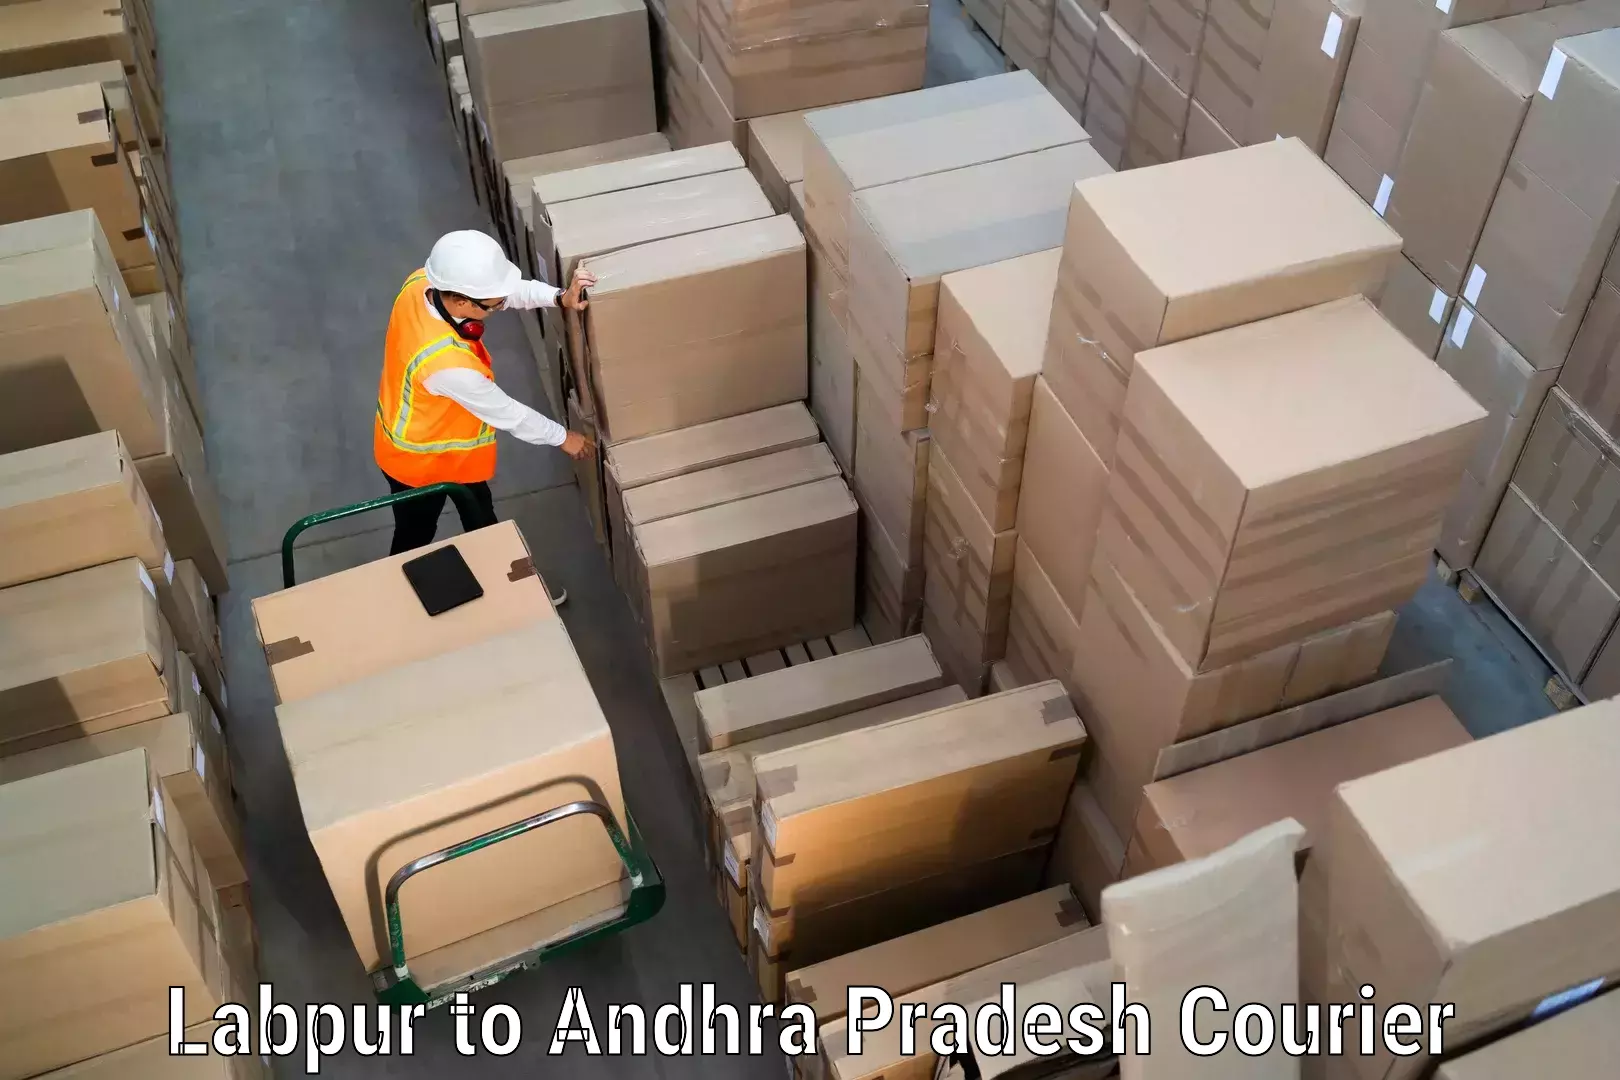 Premium courier services Labpur to Narasannapeta